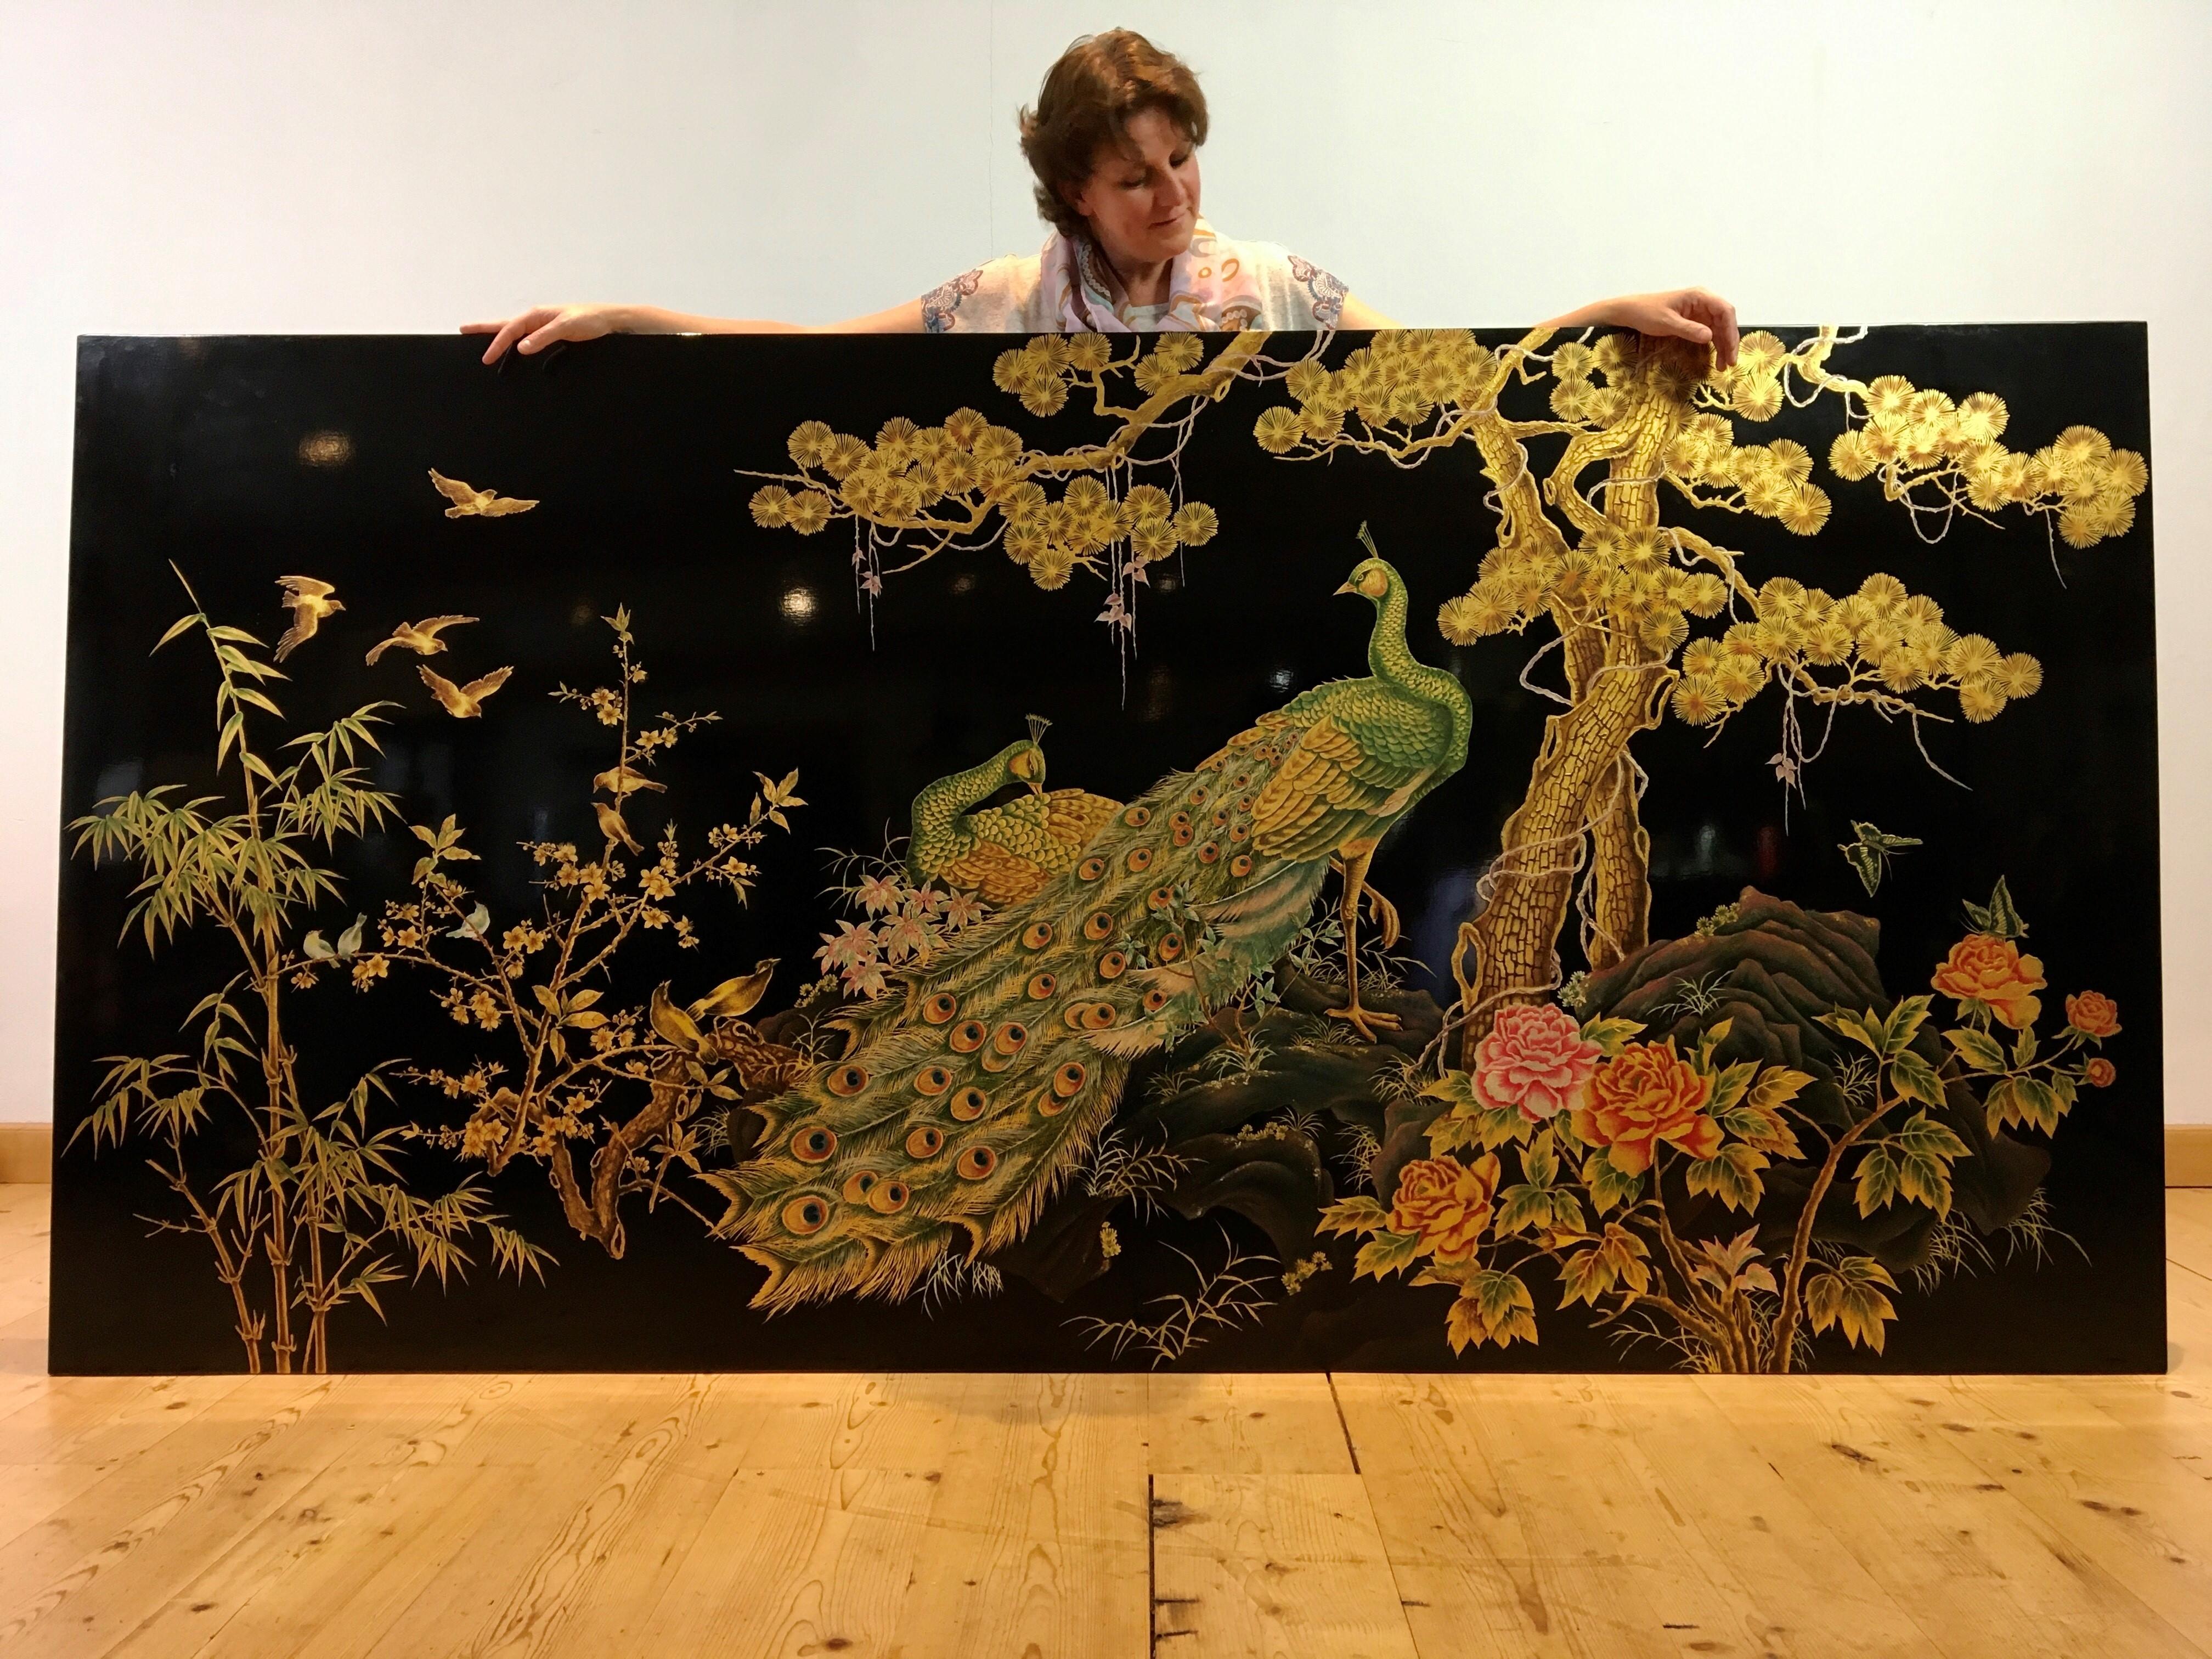 Superbe panneau mural asiatique XL avec un paon et de nombreux oiseaux.
Panneau laqué noir avec paysage peint avec 2 paons, oiseaux, papillons, fleurs, bambous, arbres en fleurs etc...
L'utilisation de peinture dorée rend ce panneau d'art très